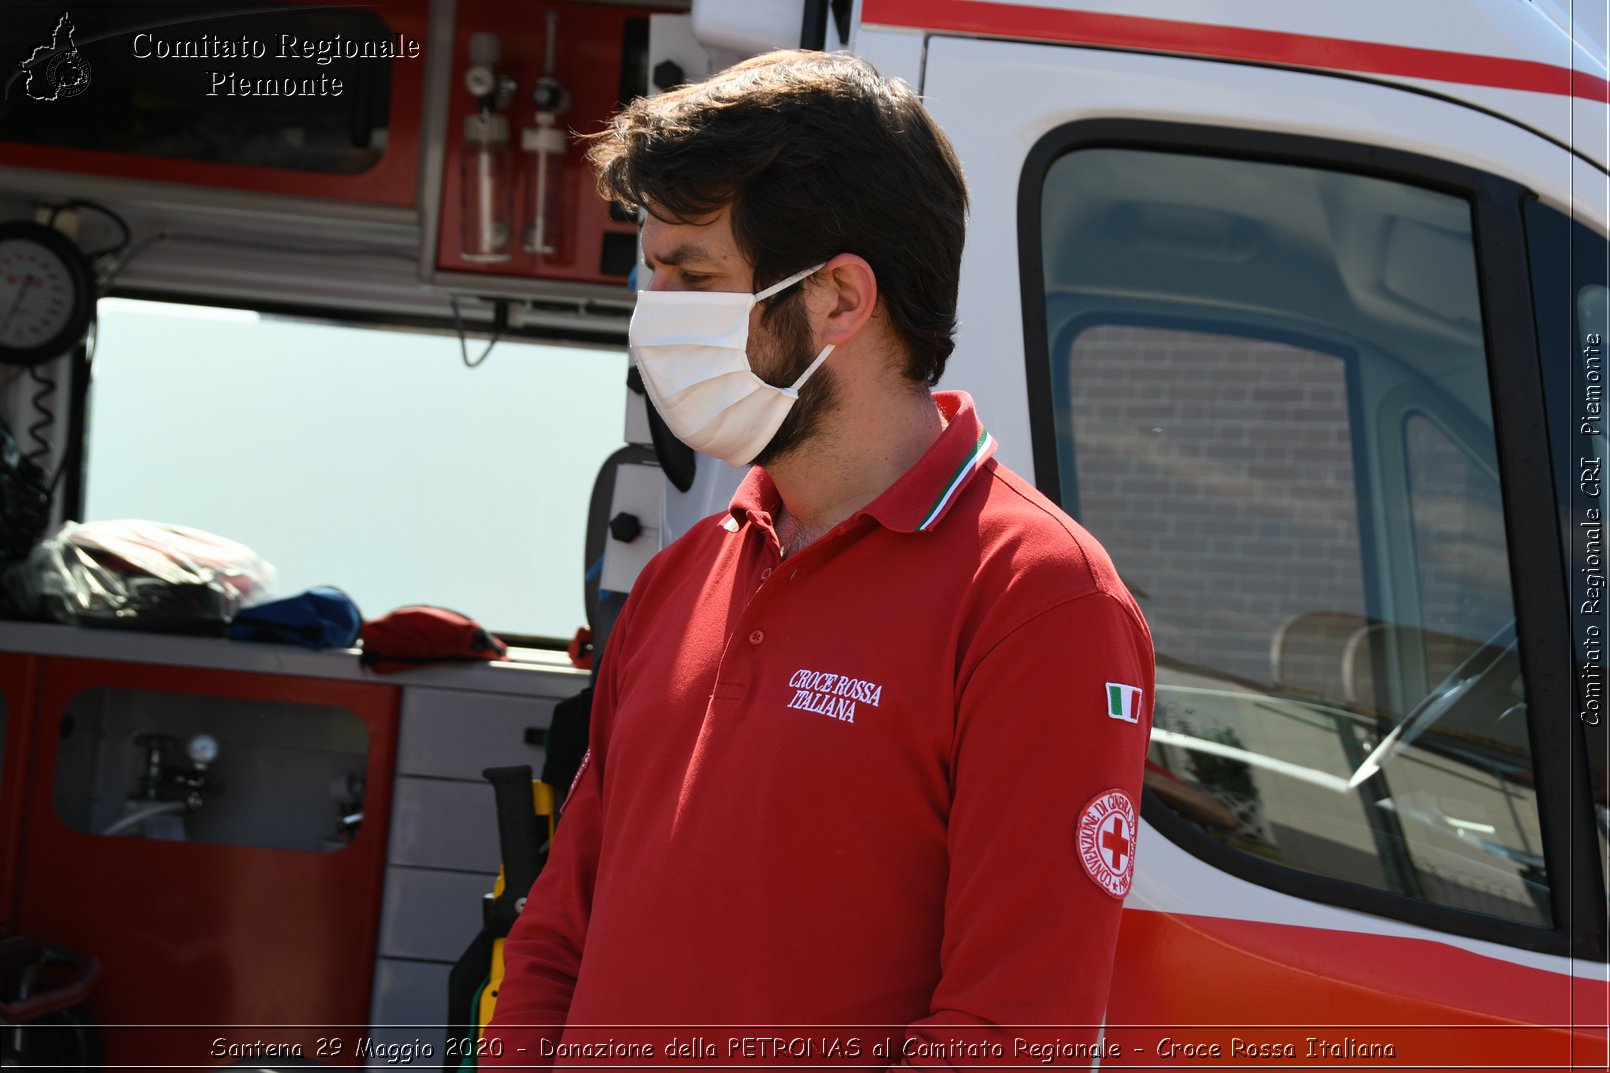 Santena 29 Maggio 2020 - Donazione della PETRONAS al Comitato Regionale - Croce Rossa Italiana